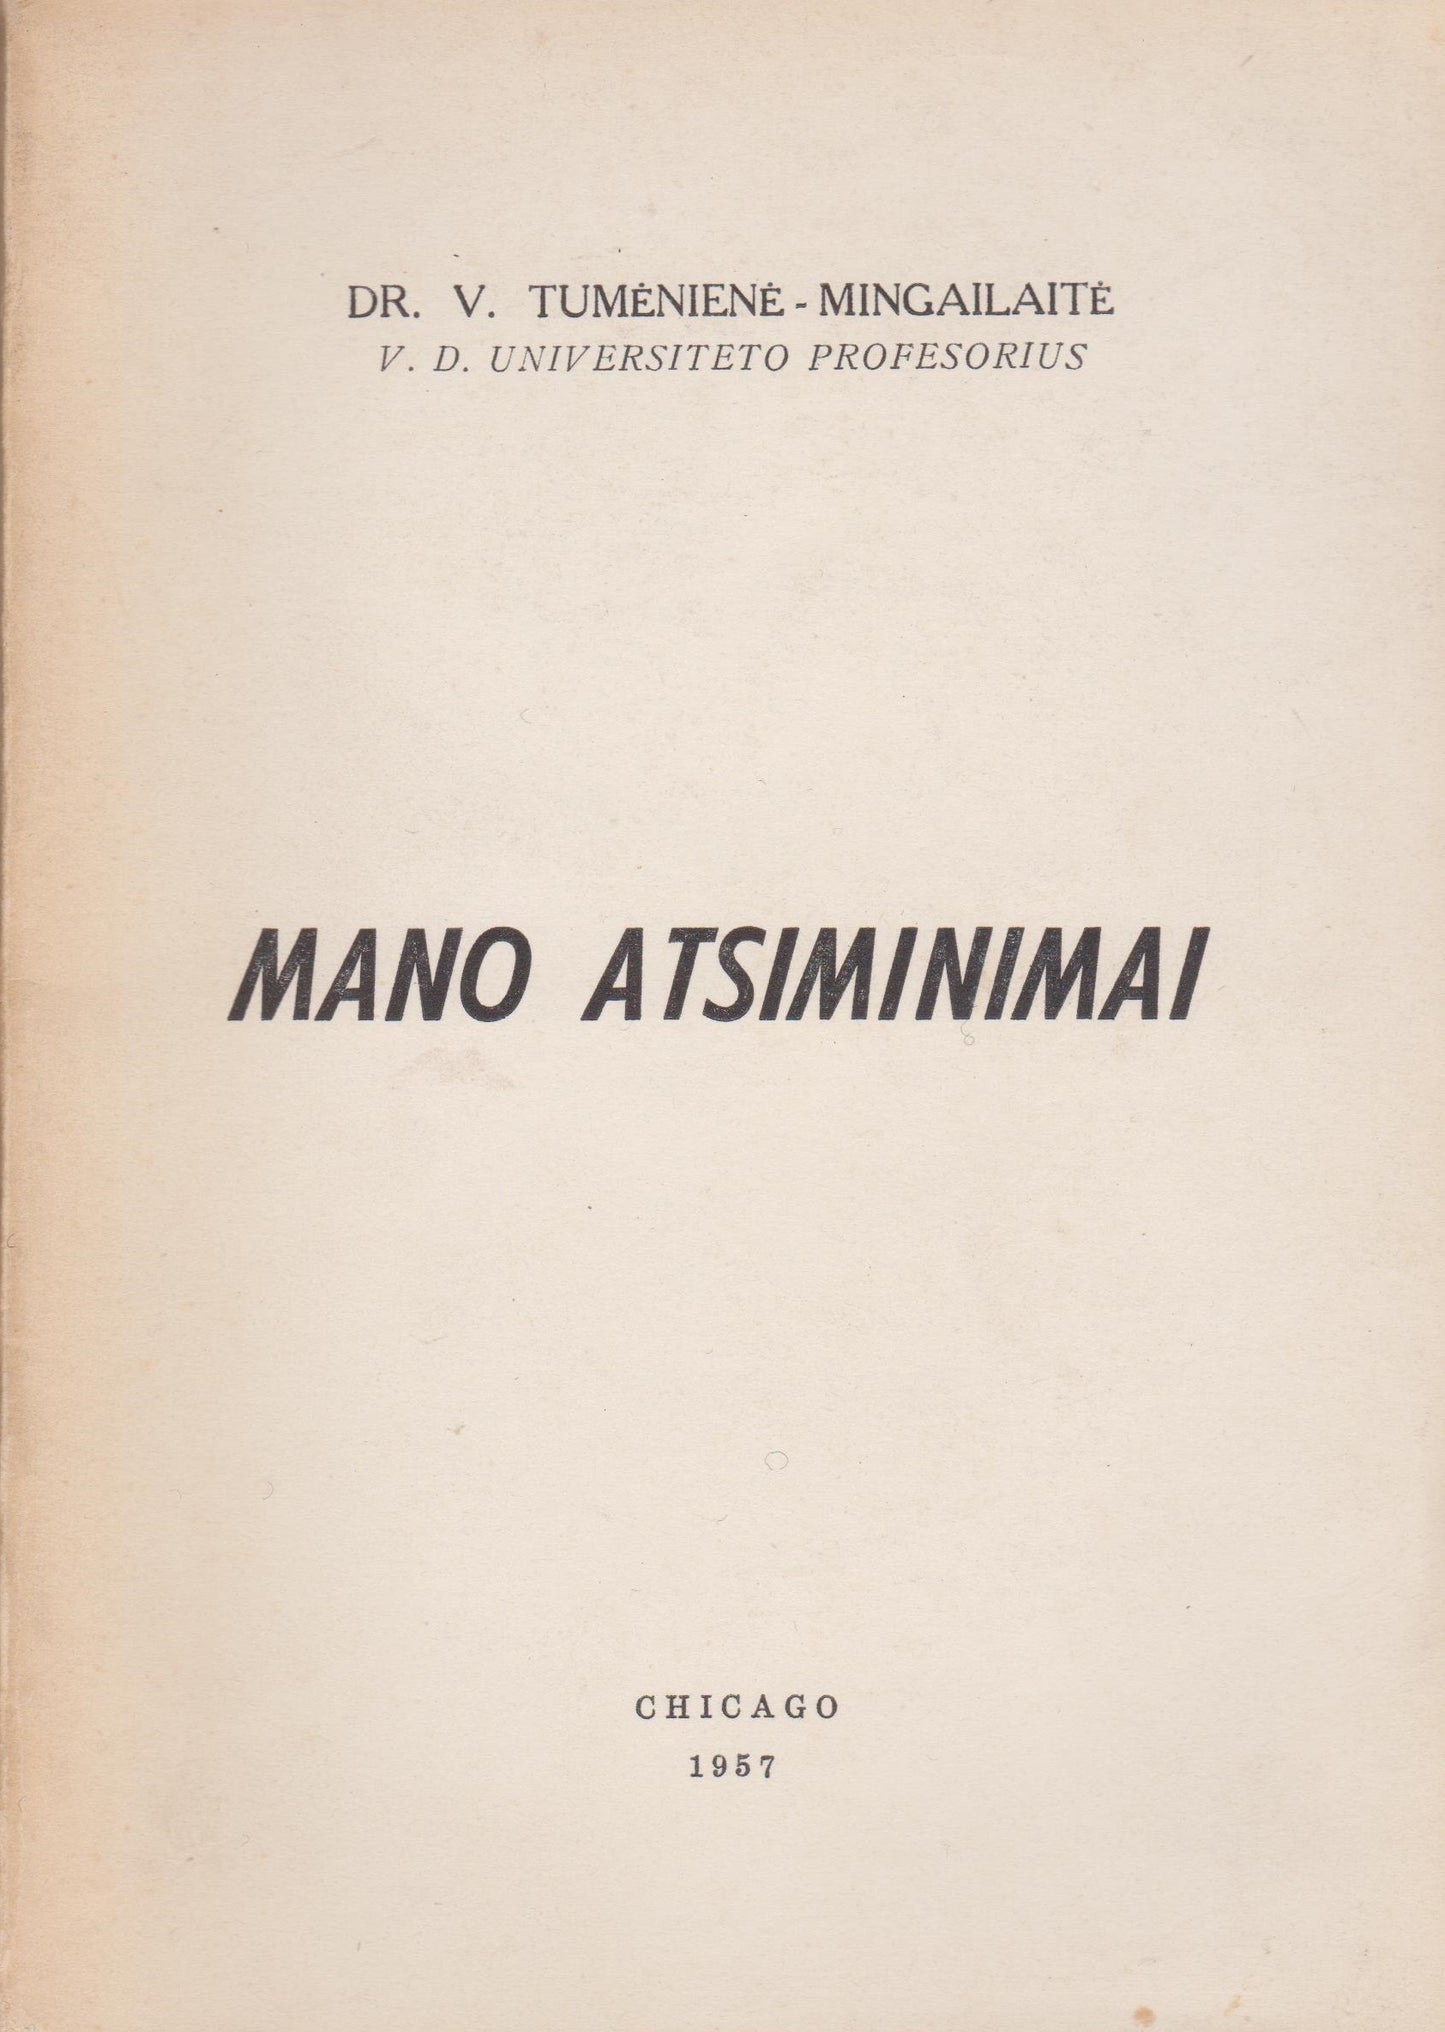 V. Tumėnienė-Mingailaitė - Mano atsiminimai, 1957 m. Chicago